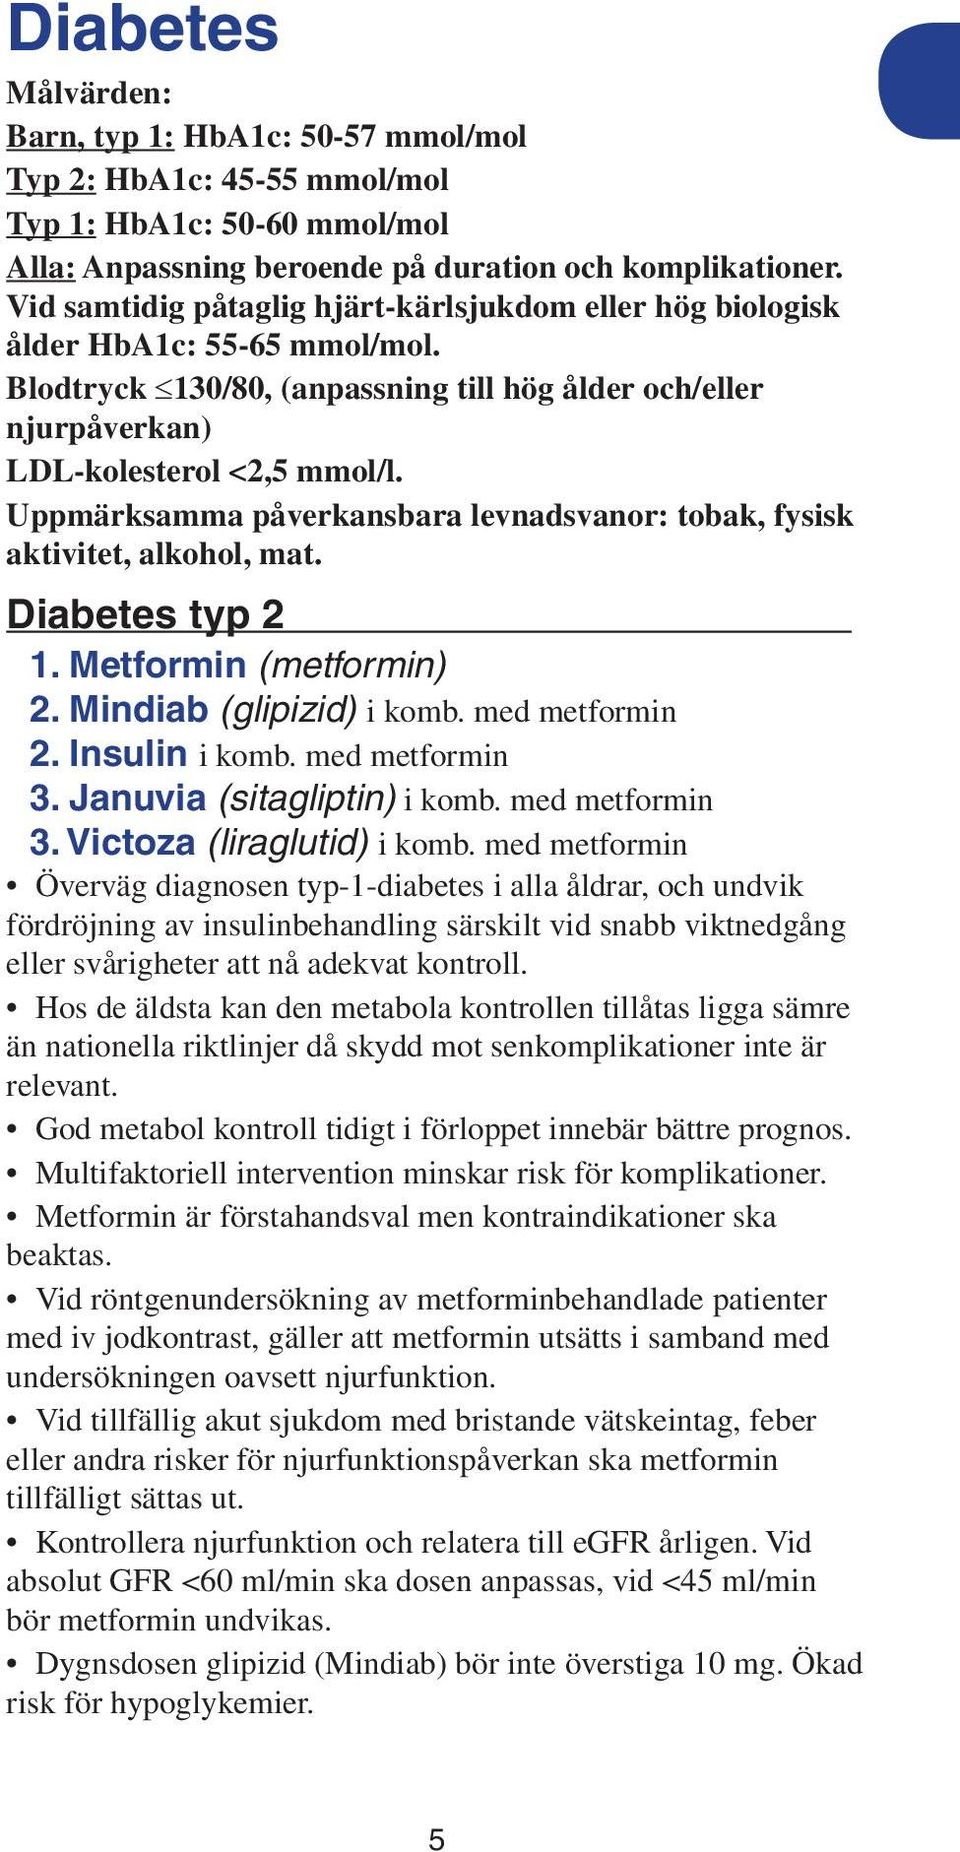 Uppmärksamma påverkansbara levnadsvanor: tobak, fysisk aktivitet, alkohol, mat. Diabetes typ 2 1. Metformin (metformin) 2. Mindiab (glipizid) i komb. med metformin 2. Insulin i komb. med metformin 3.